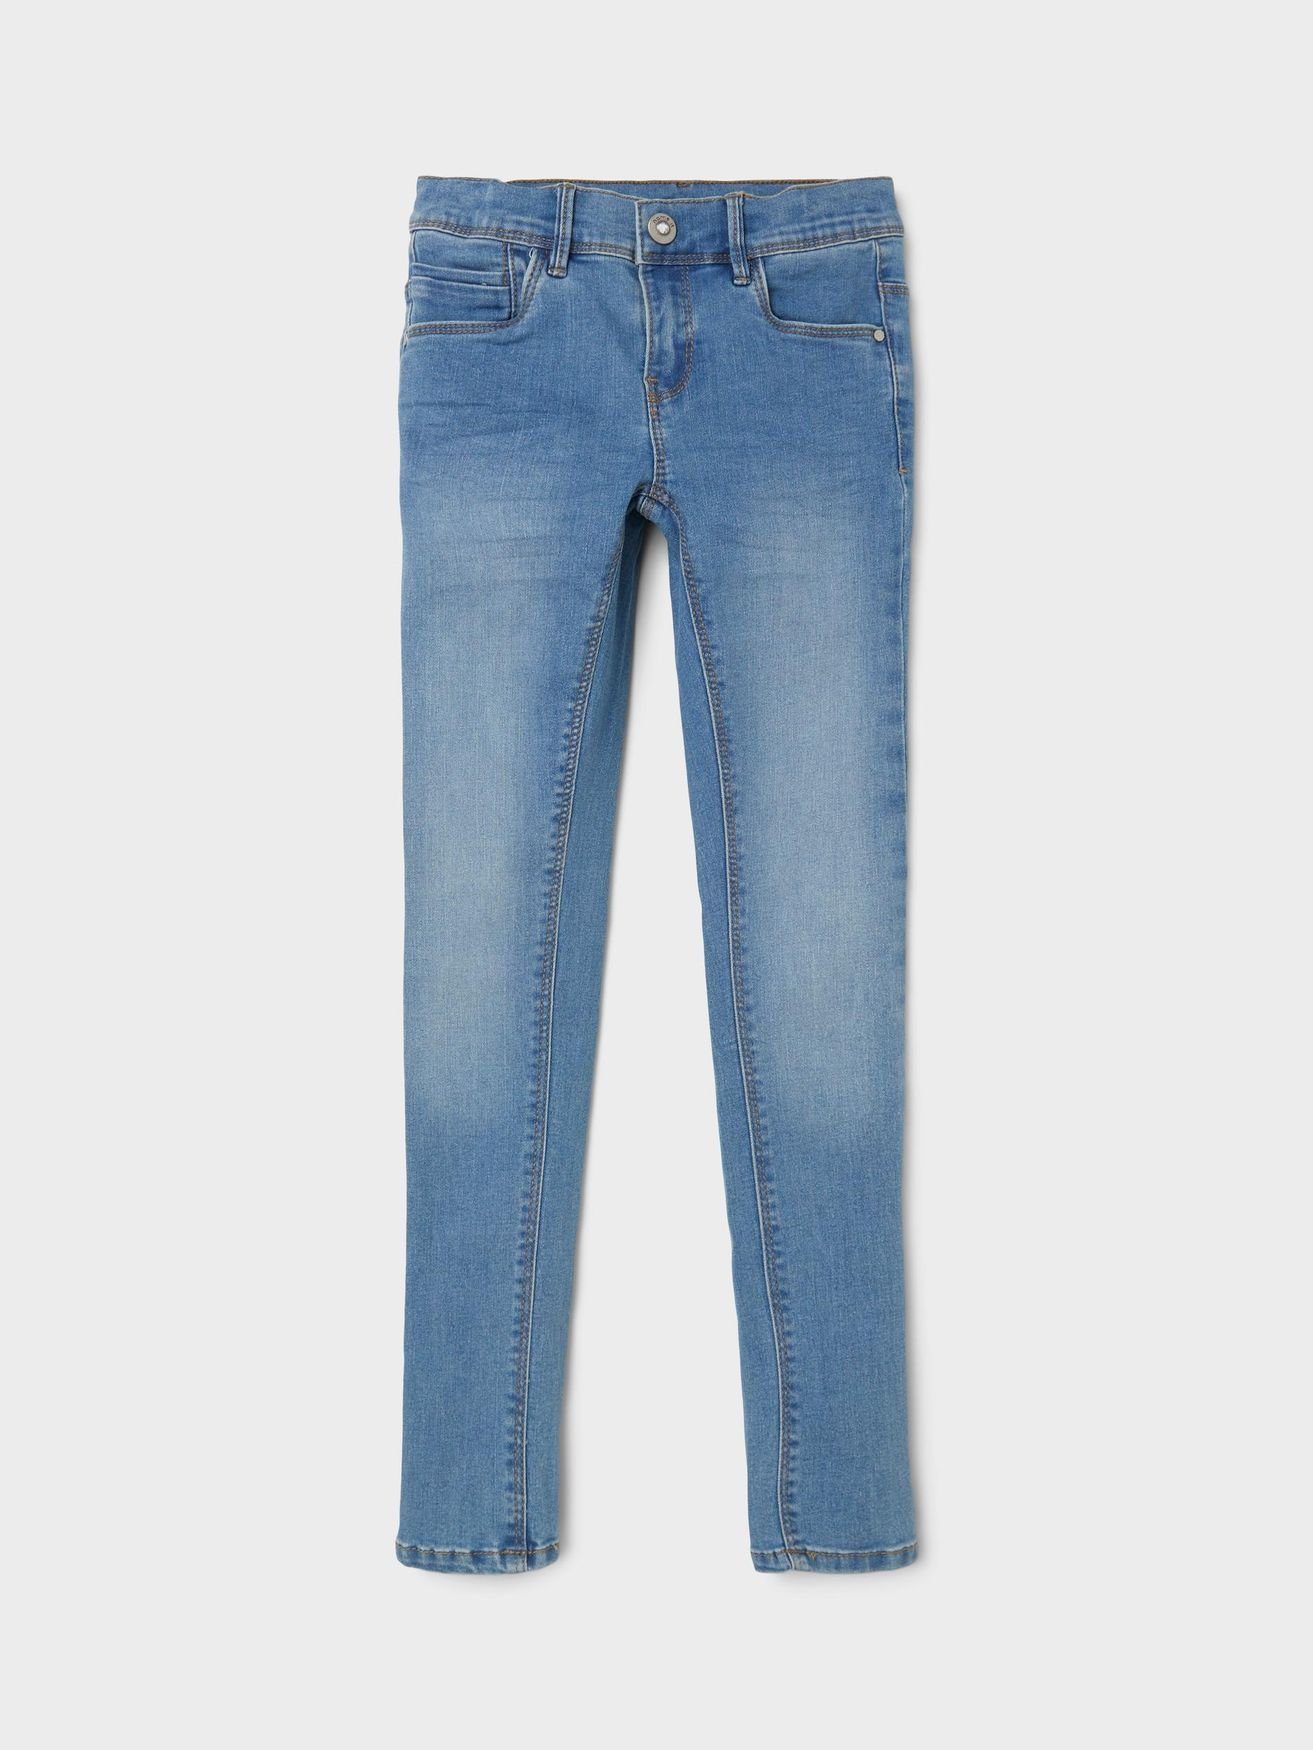 Jeans in Hellblau 5546 It Hose NKFPOLLY Skinny Name Denim Regular-fit-Jeans